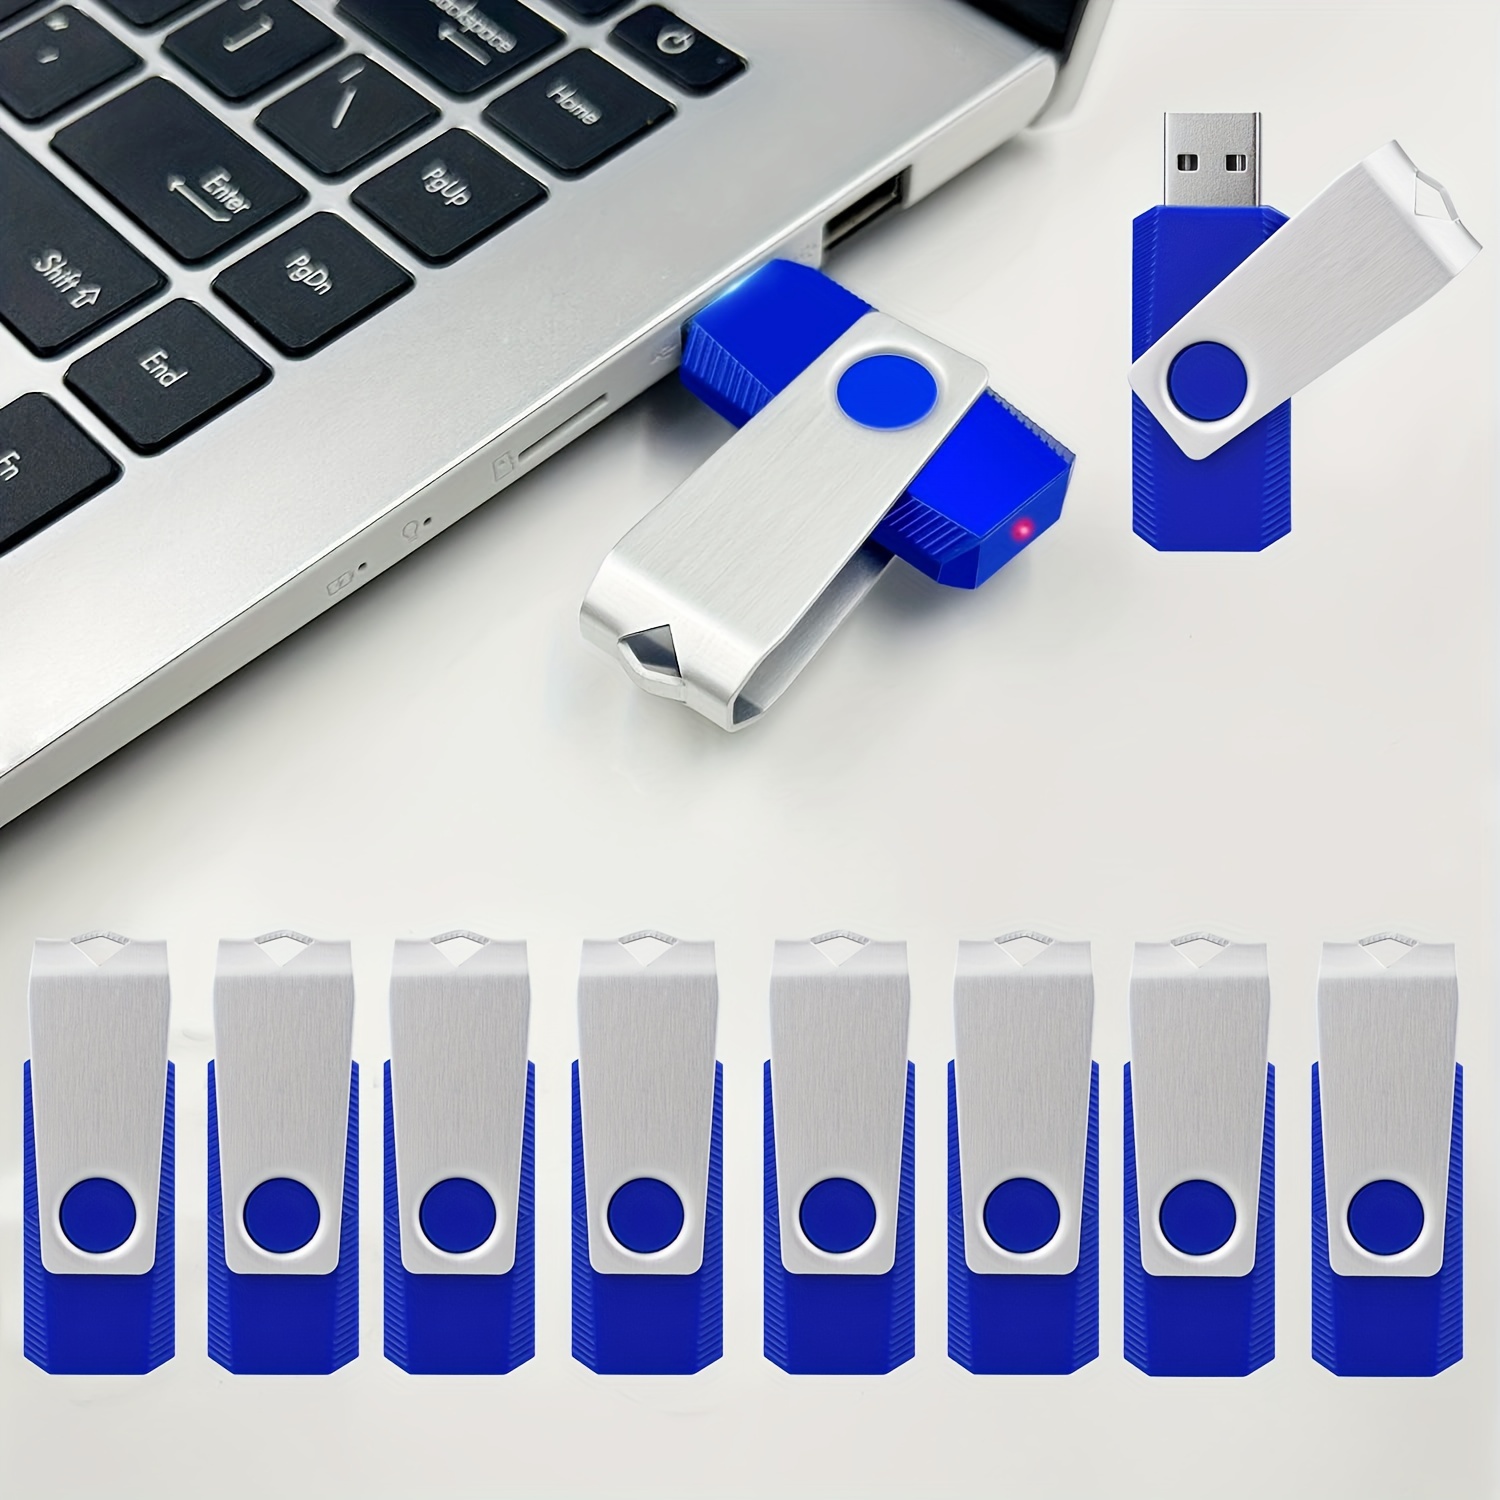 Clé USB 128Go, Flash Drive Pendrive USB 2.0 128Go Imperméable Portable  Mémoire Stick pour Ordinateur Portable, PC, Voiture Etc (Argent)